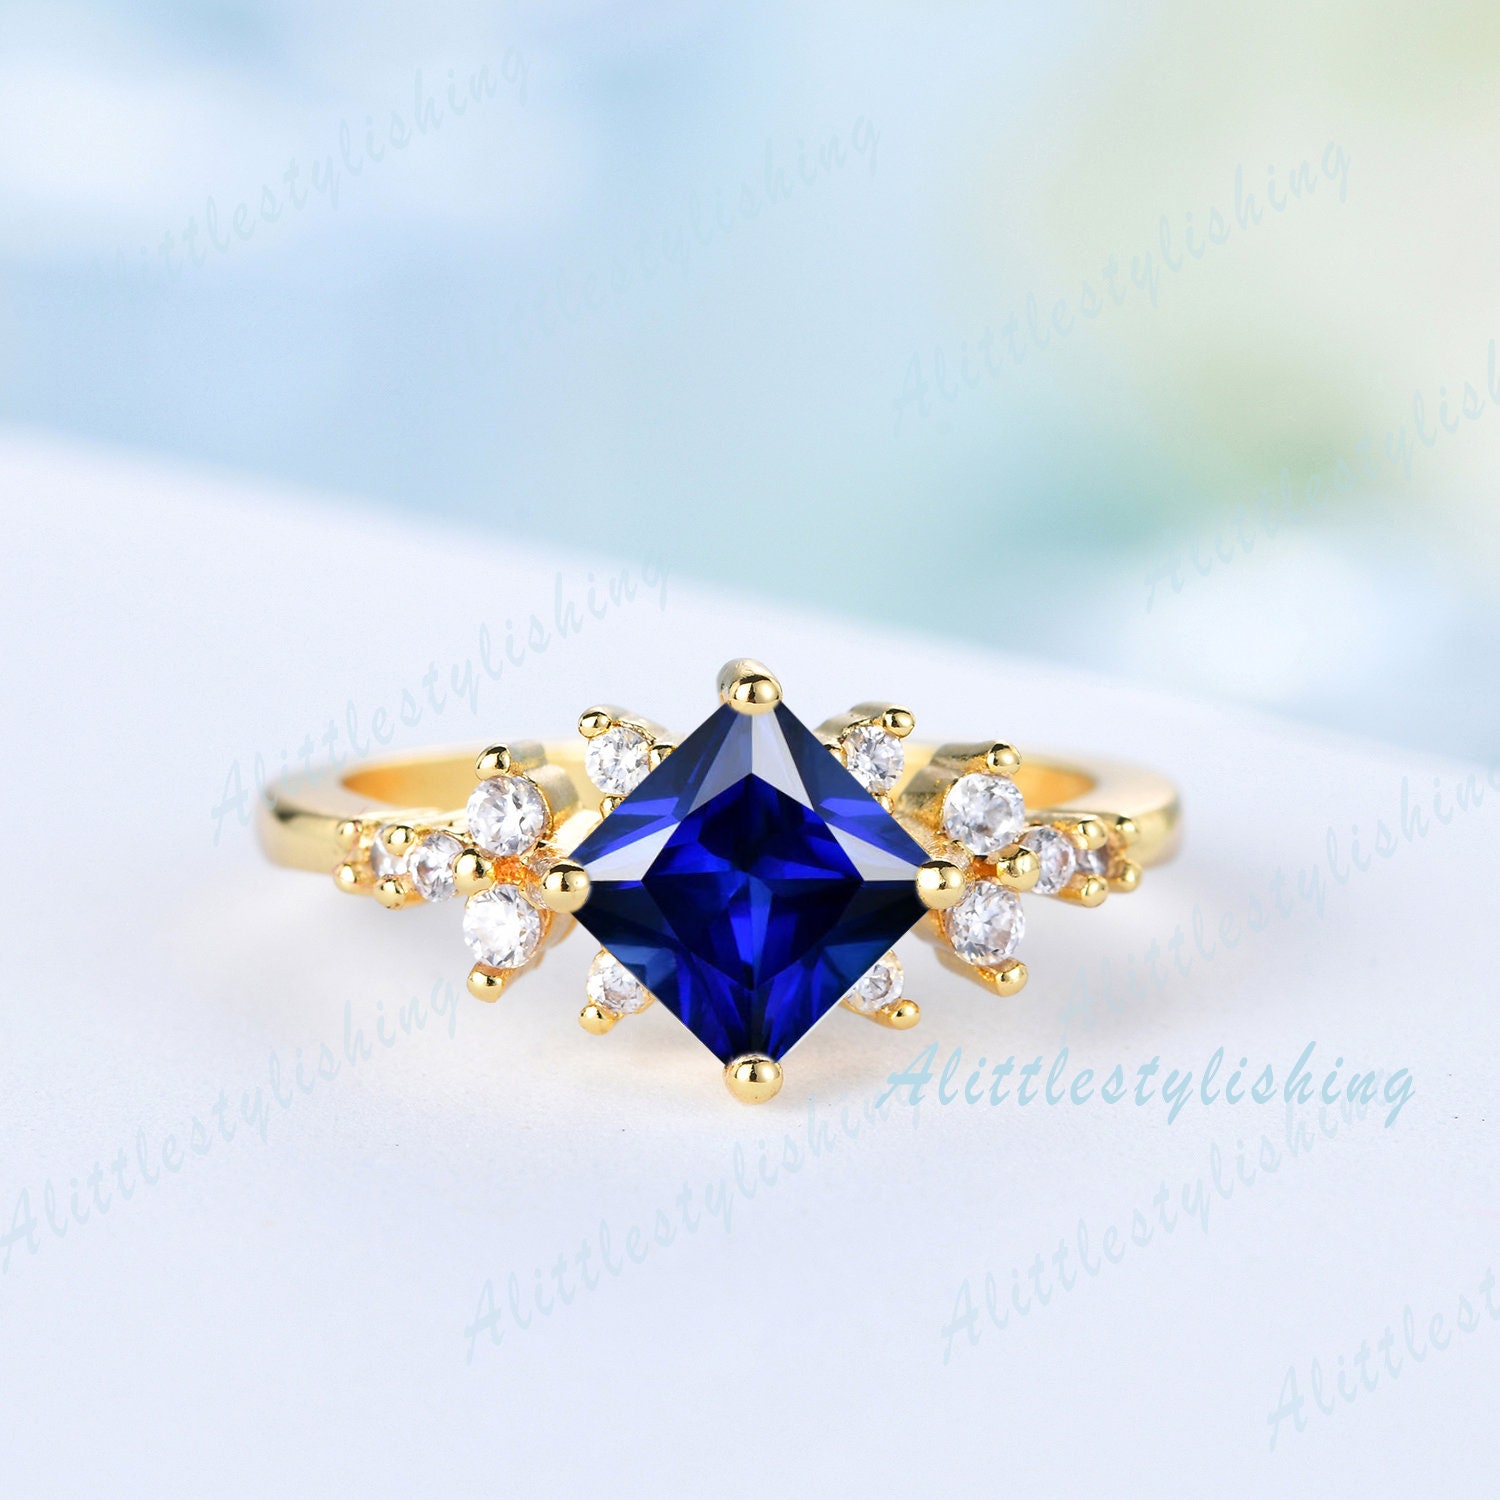 Princess Cut Blue Saphir Verlobungsring 14K Massivgold Ring Solitär Für Frau Verlobung Jahrestag Handgemachter Schmuck von Alittlestylishing